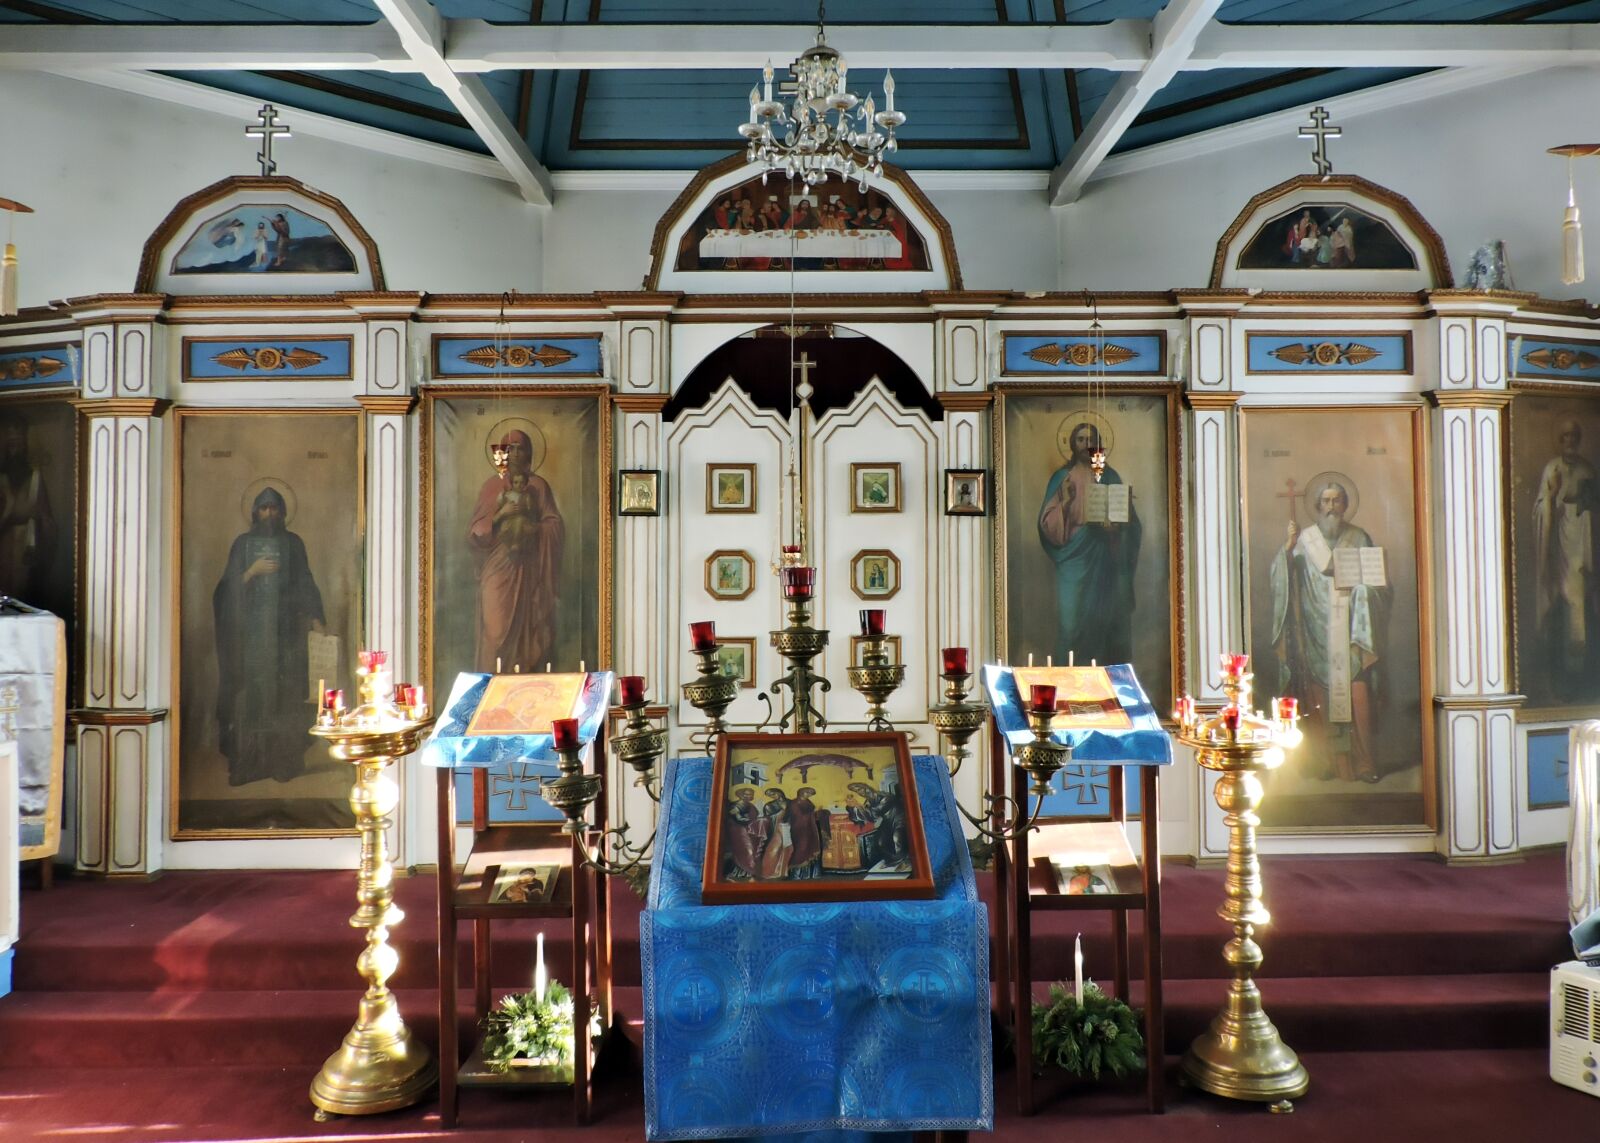 Nikon Coolpix P530 sample photo. Orthodox church, iconostasis, icon photography